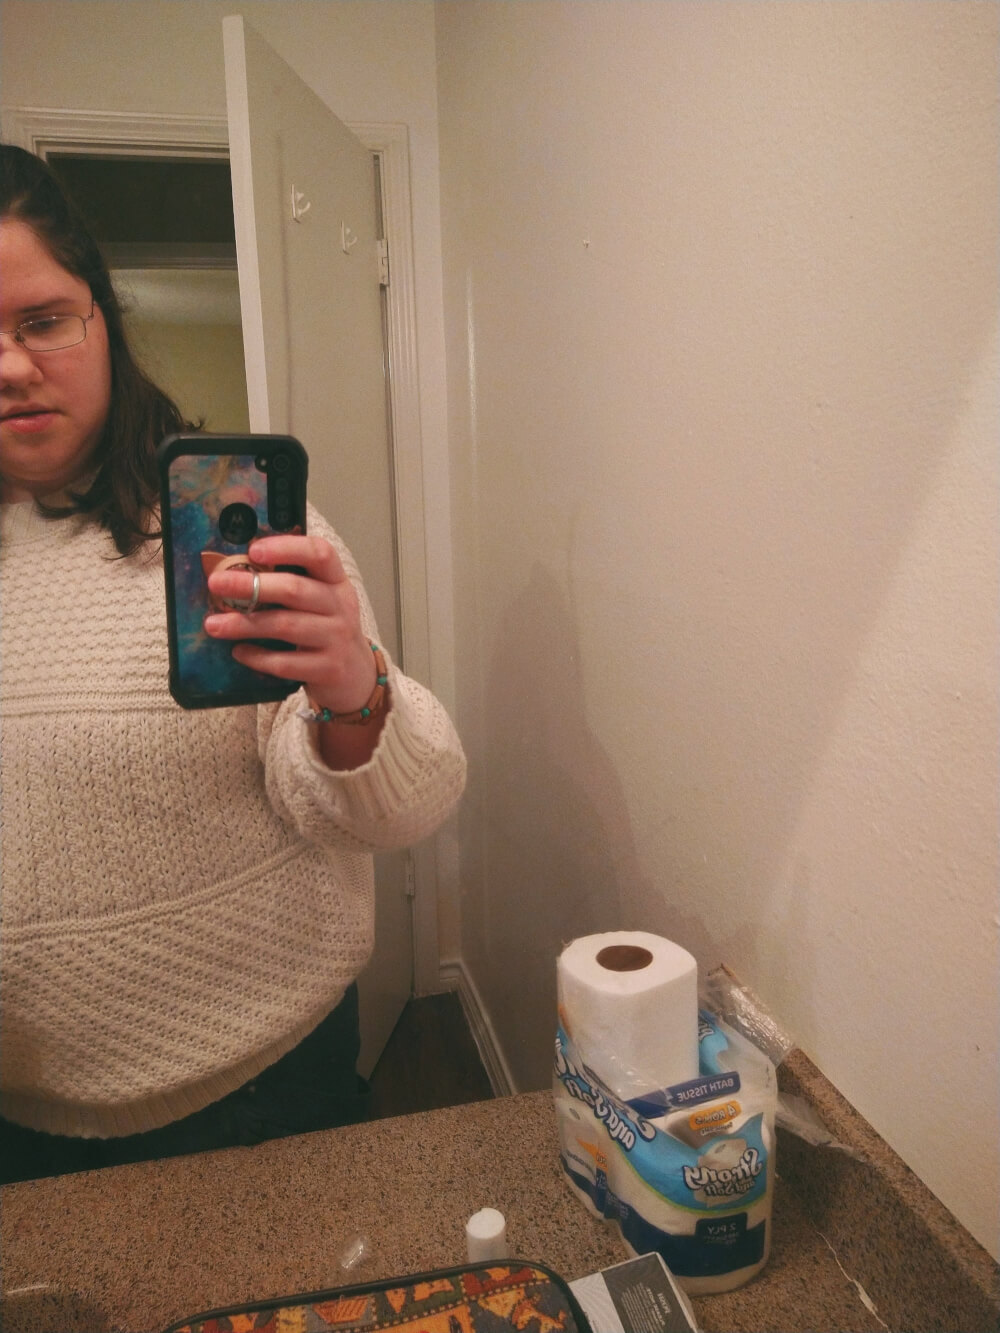 Bathroom mirror selfie, except mirror is broken